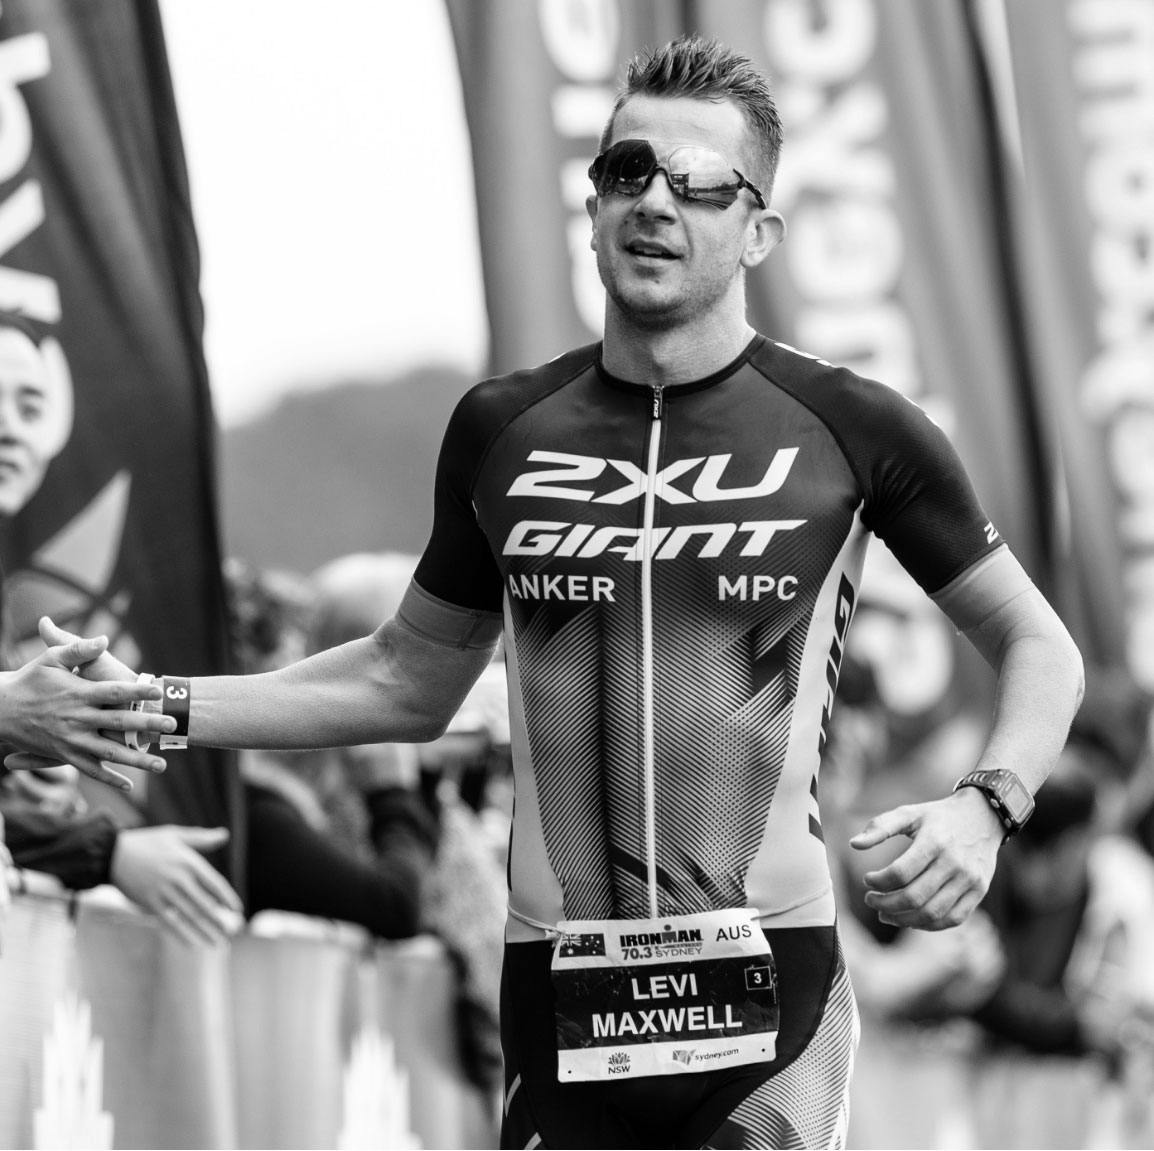 2XU Triathlon Series on Instagram: 1 week to go until Race 1